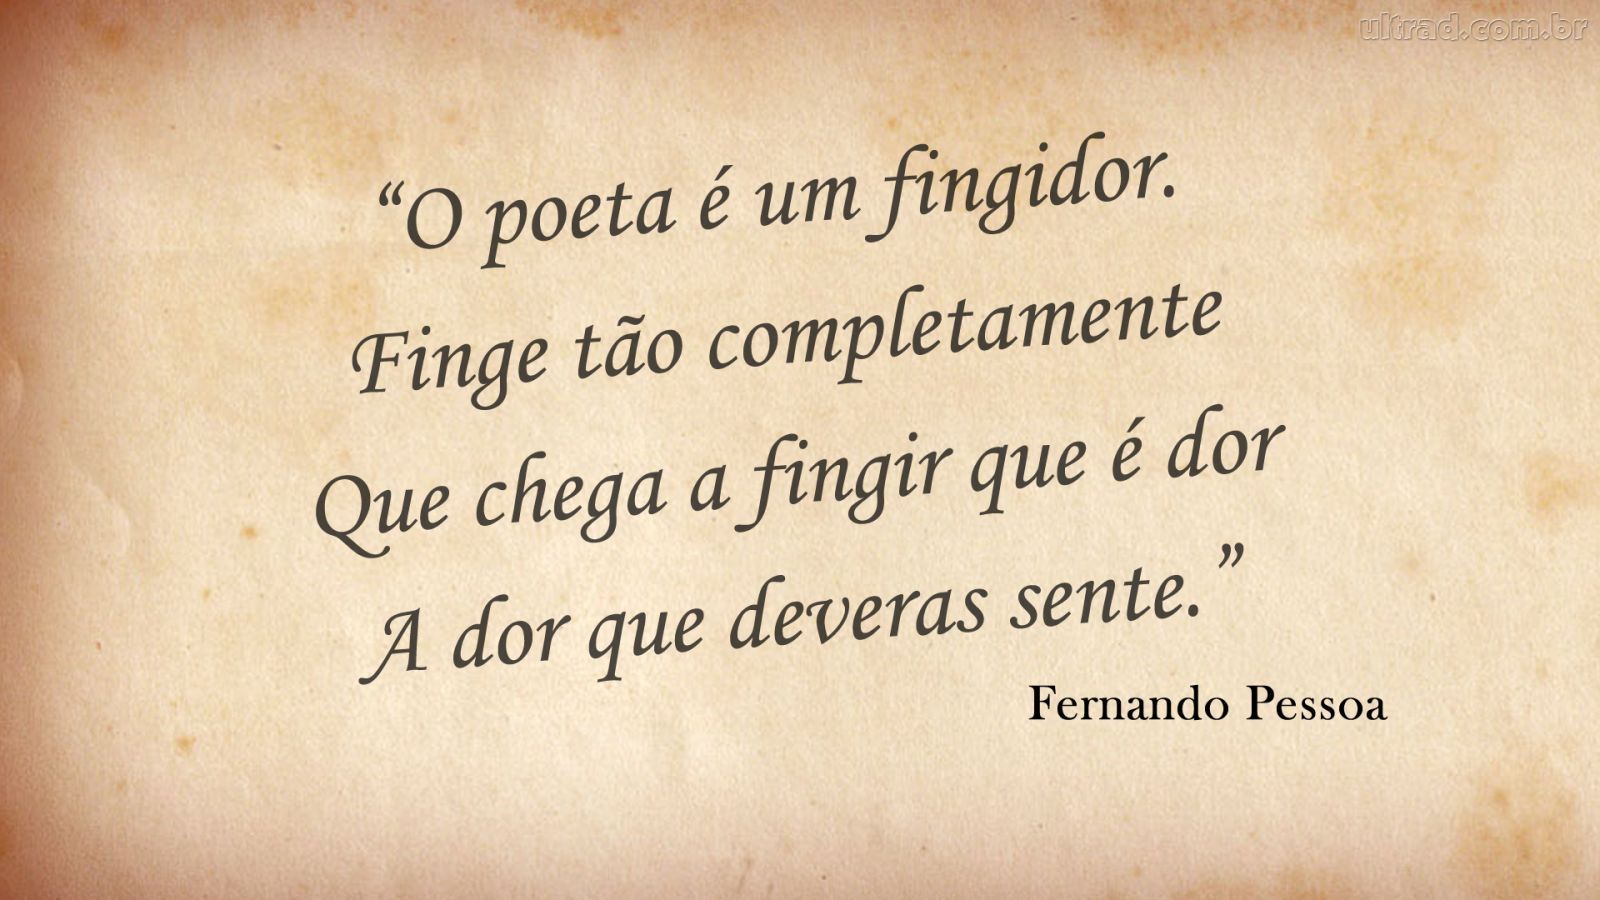 5 dos mais belos poemas escritos em português